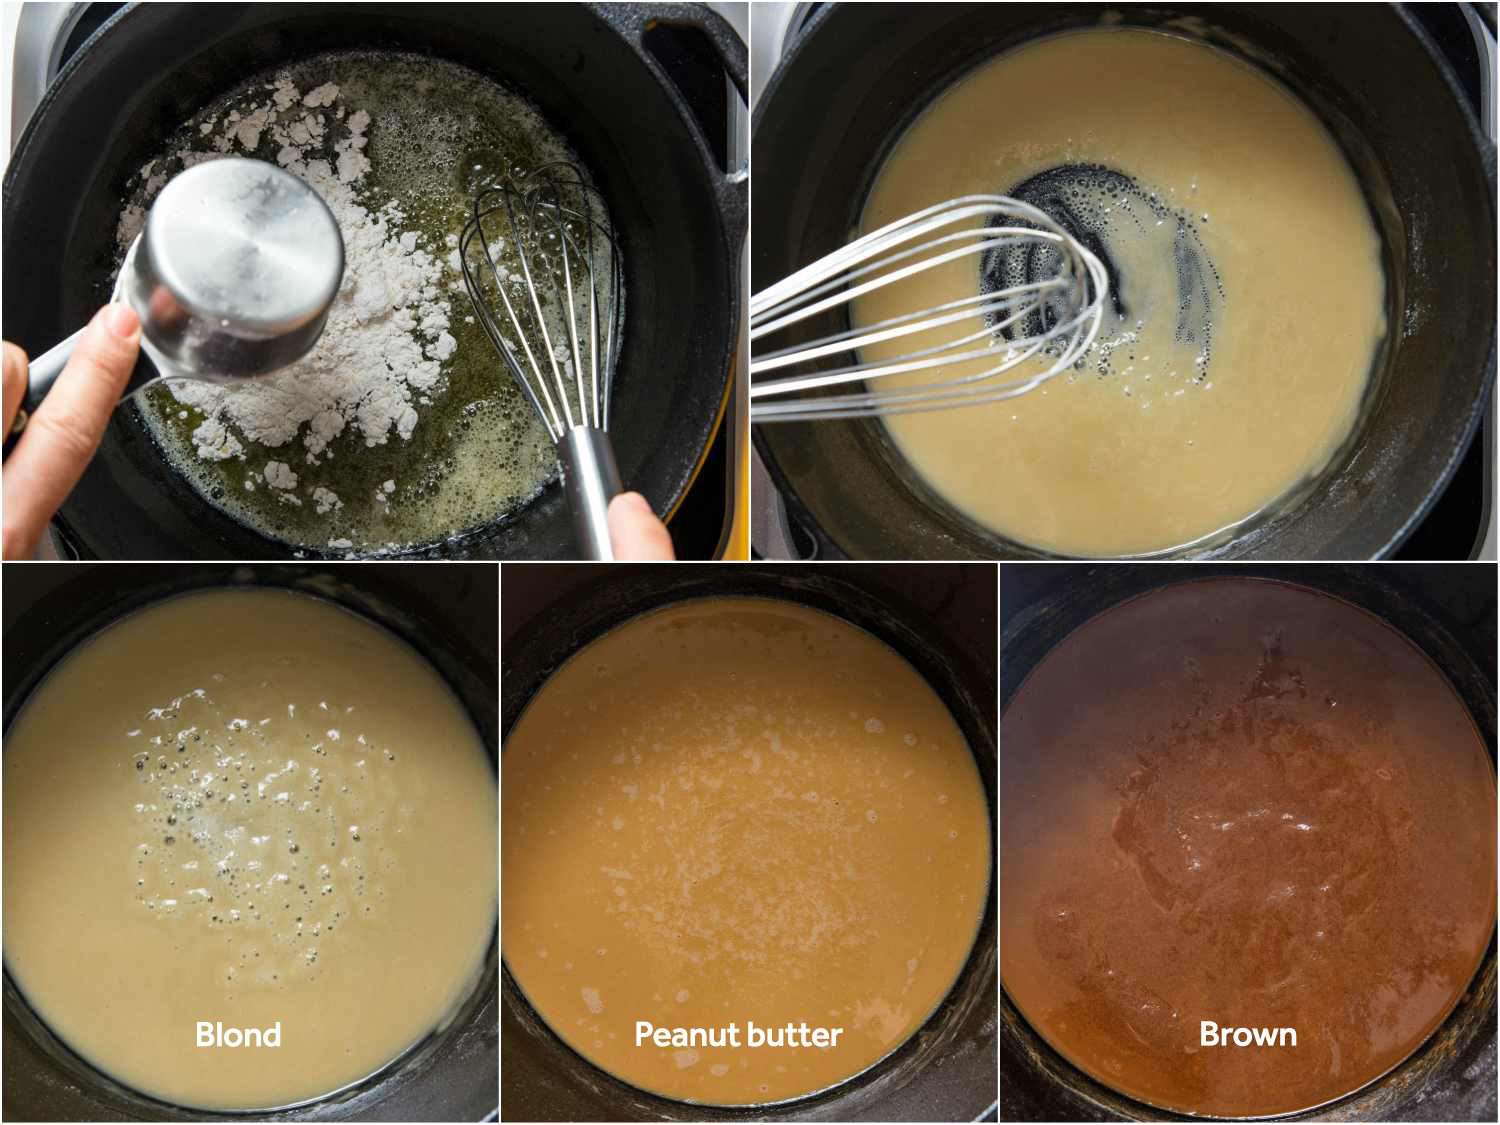 五的拼贴图片:前两个商店wing making a roux by cooking flour with butter, the bottom three showing different stages of doneness (blond, peanut butter, brown).